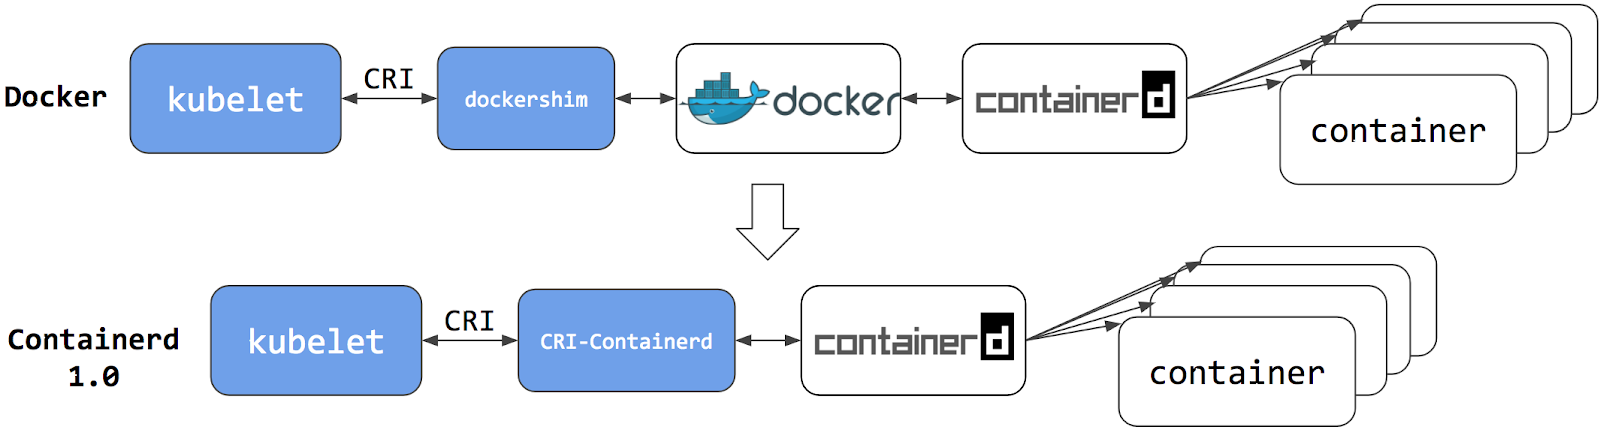 Dockershim 和 Containerd CRI 的实现对比图